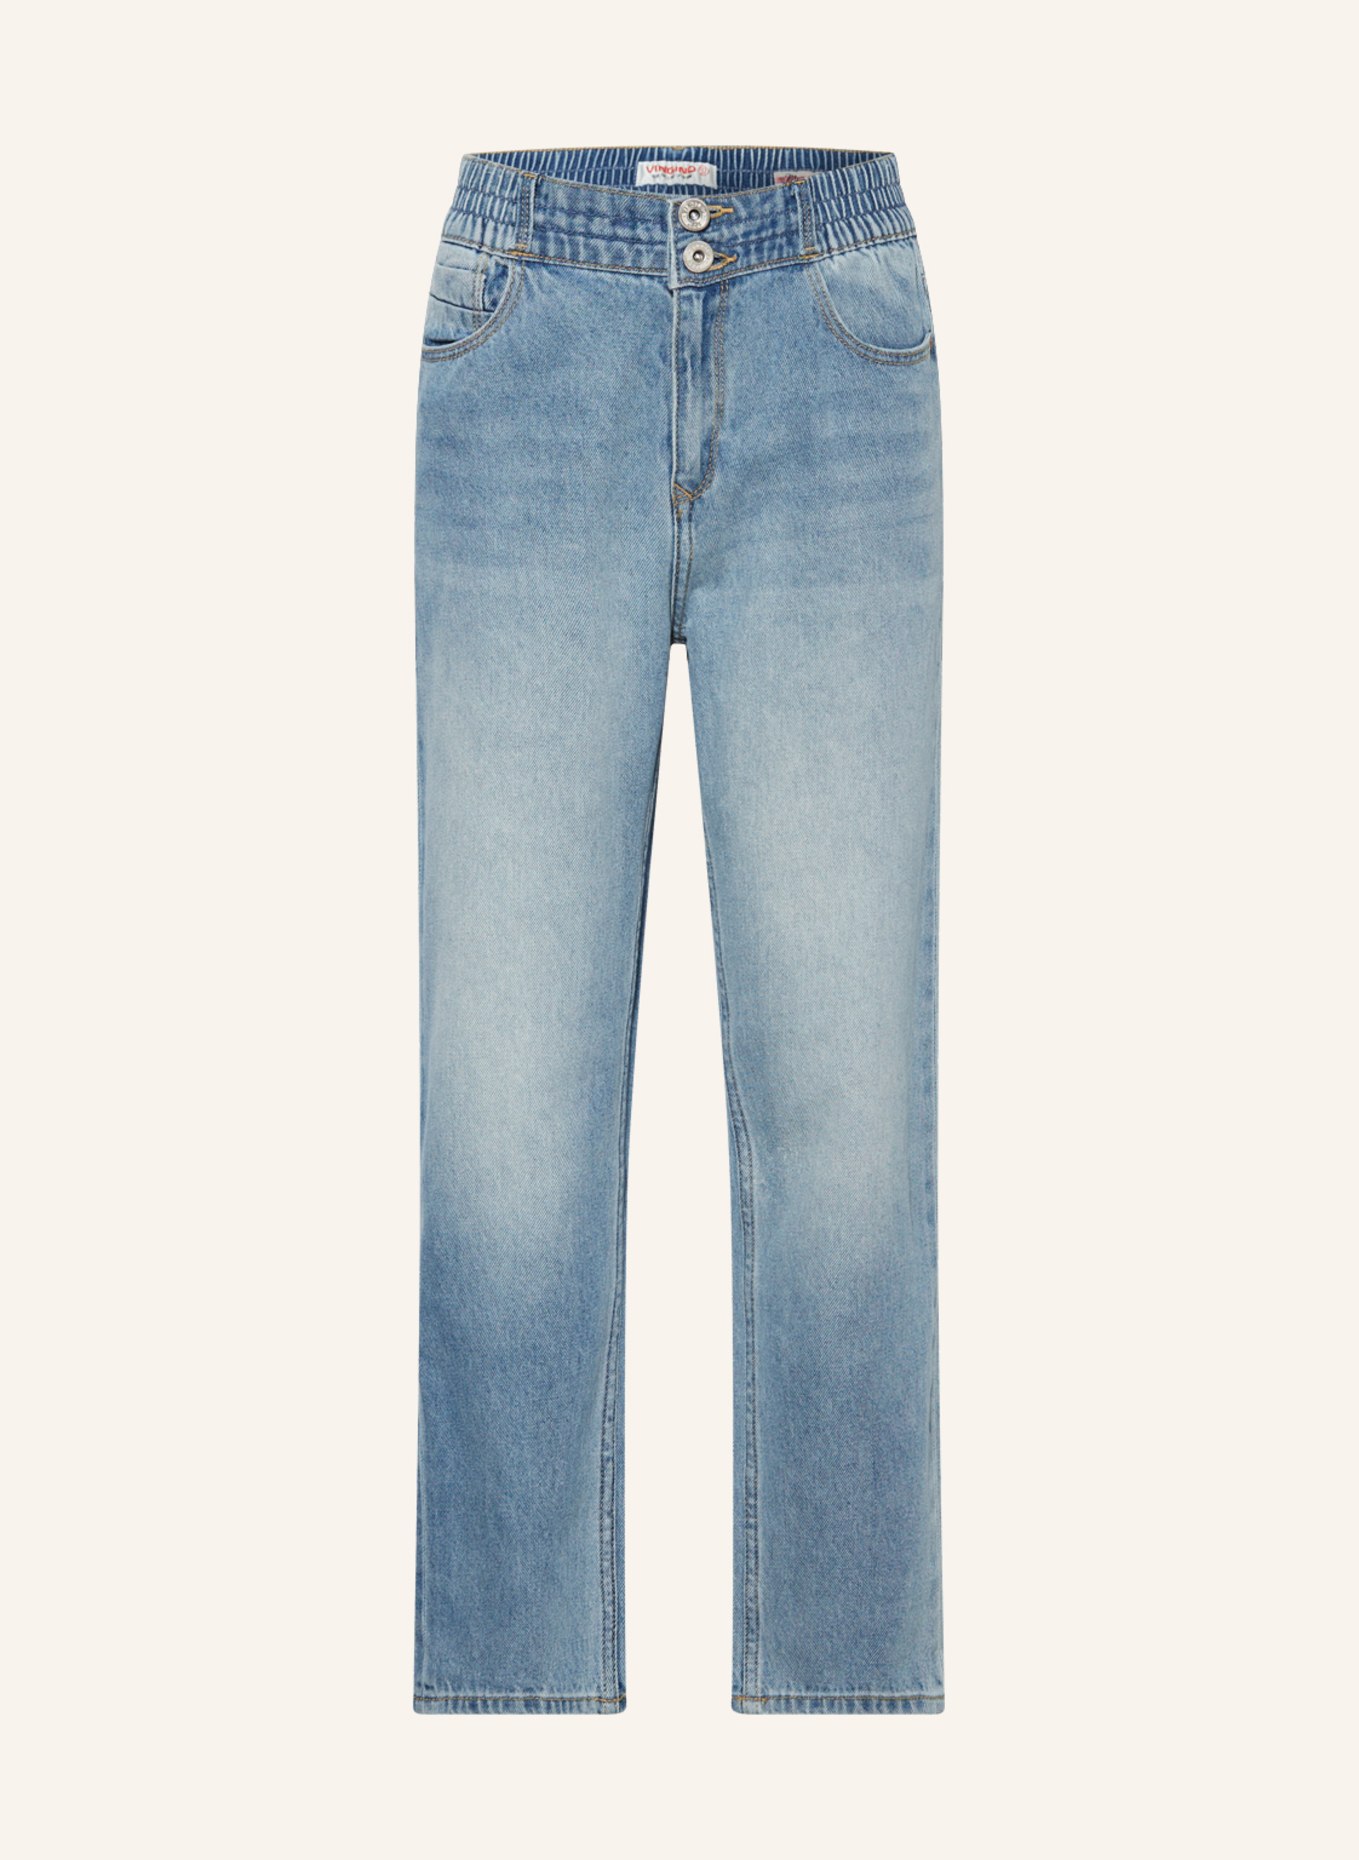 VINGINO Jeans CHIARA, Farbe: OLD VINTAGE (Bild 1)